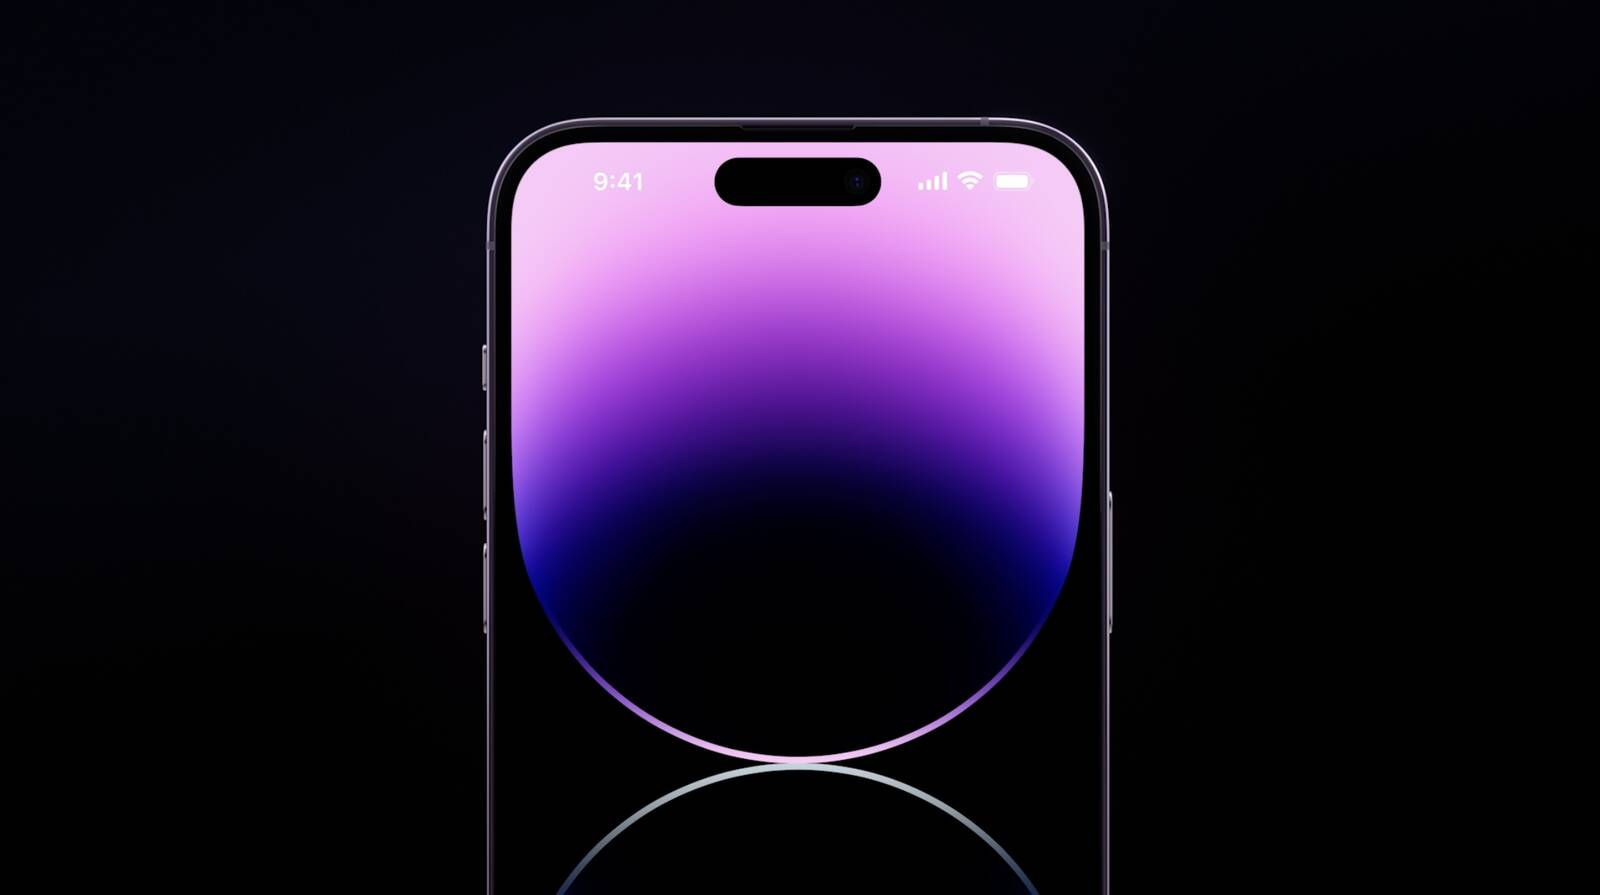 iPhone 14 phiên bản màu tím sẽ khiến bạn cảm thấy thích thú ngay từ cái nhìn đầu tiên. Với thiết kế độc đáo, màu sắc tinh tế, chiếc iPhone 14 màu tím sẽ làm bạn cảm thấy hoàn toàn hài lòng. Tham gia ngay để khám phá chiếc iPhone 14 phiên bản màu tím và trải nghiệm những tính năng đặc biệt mà nó mang lại.